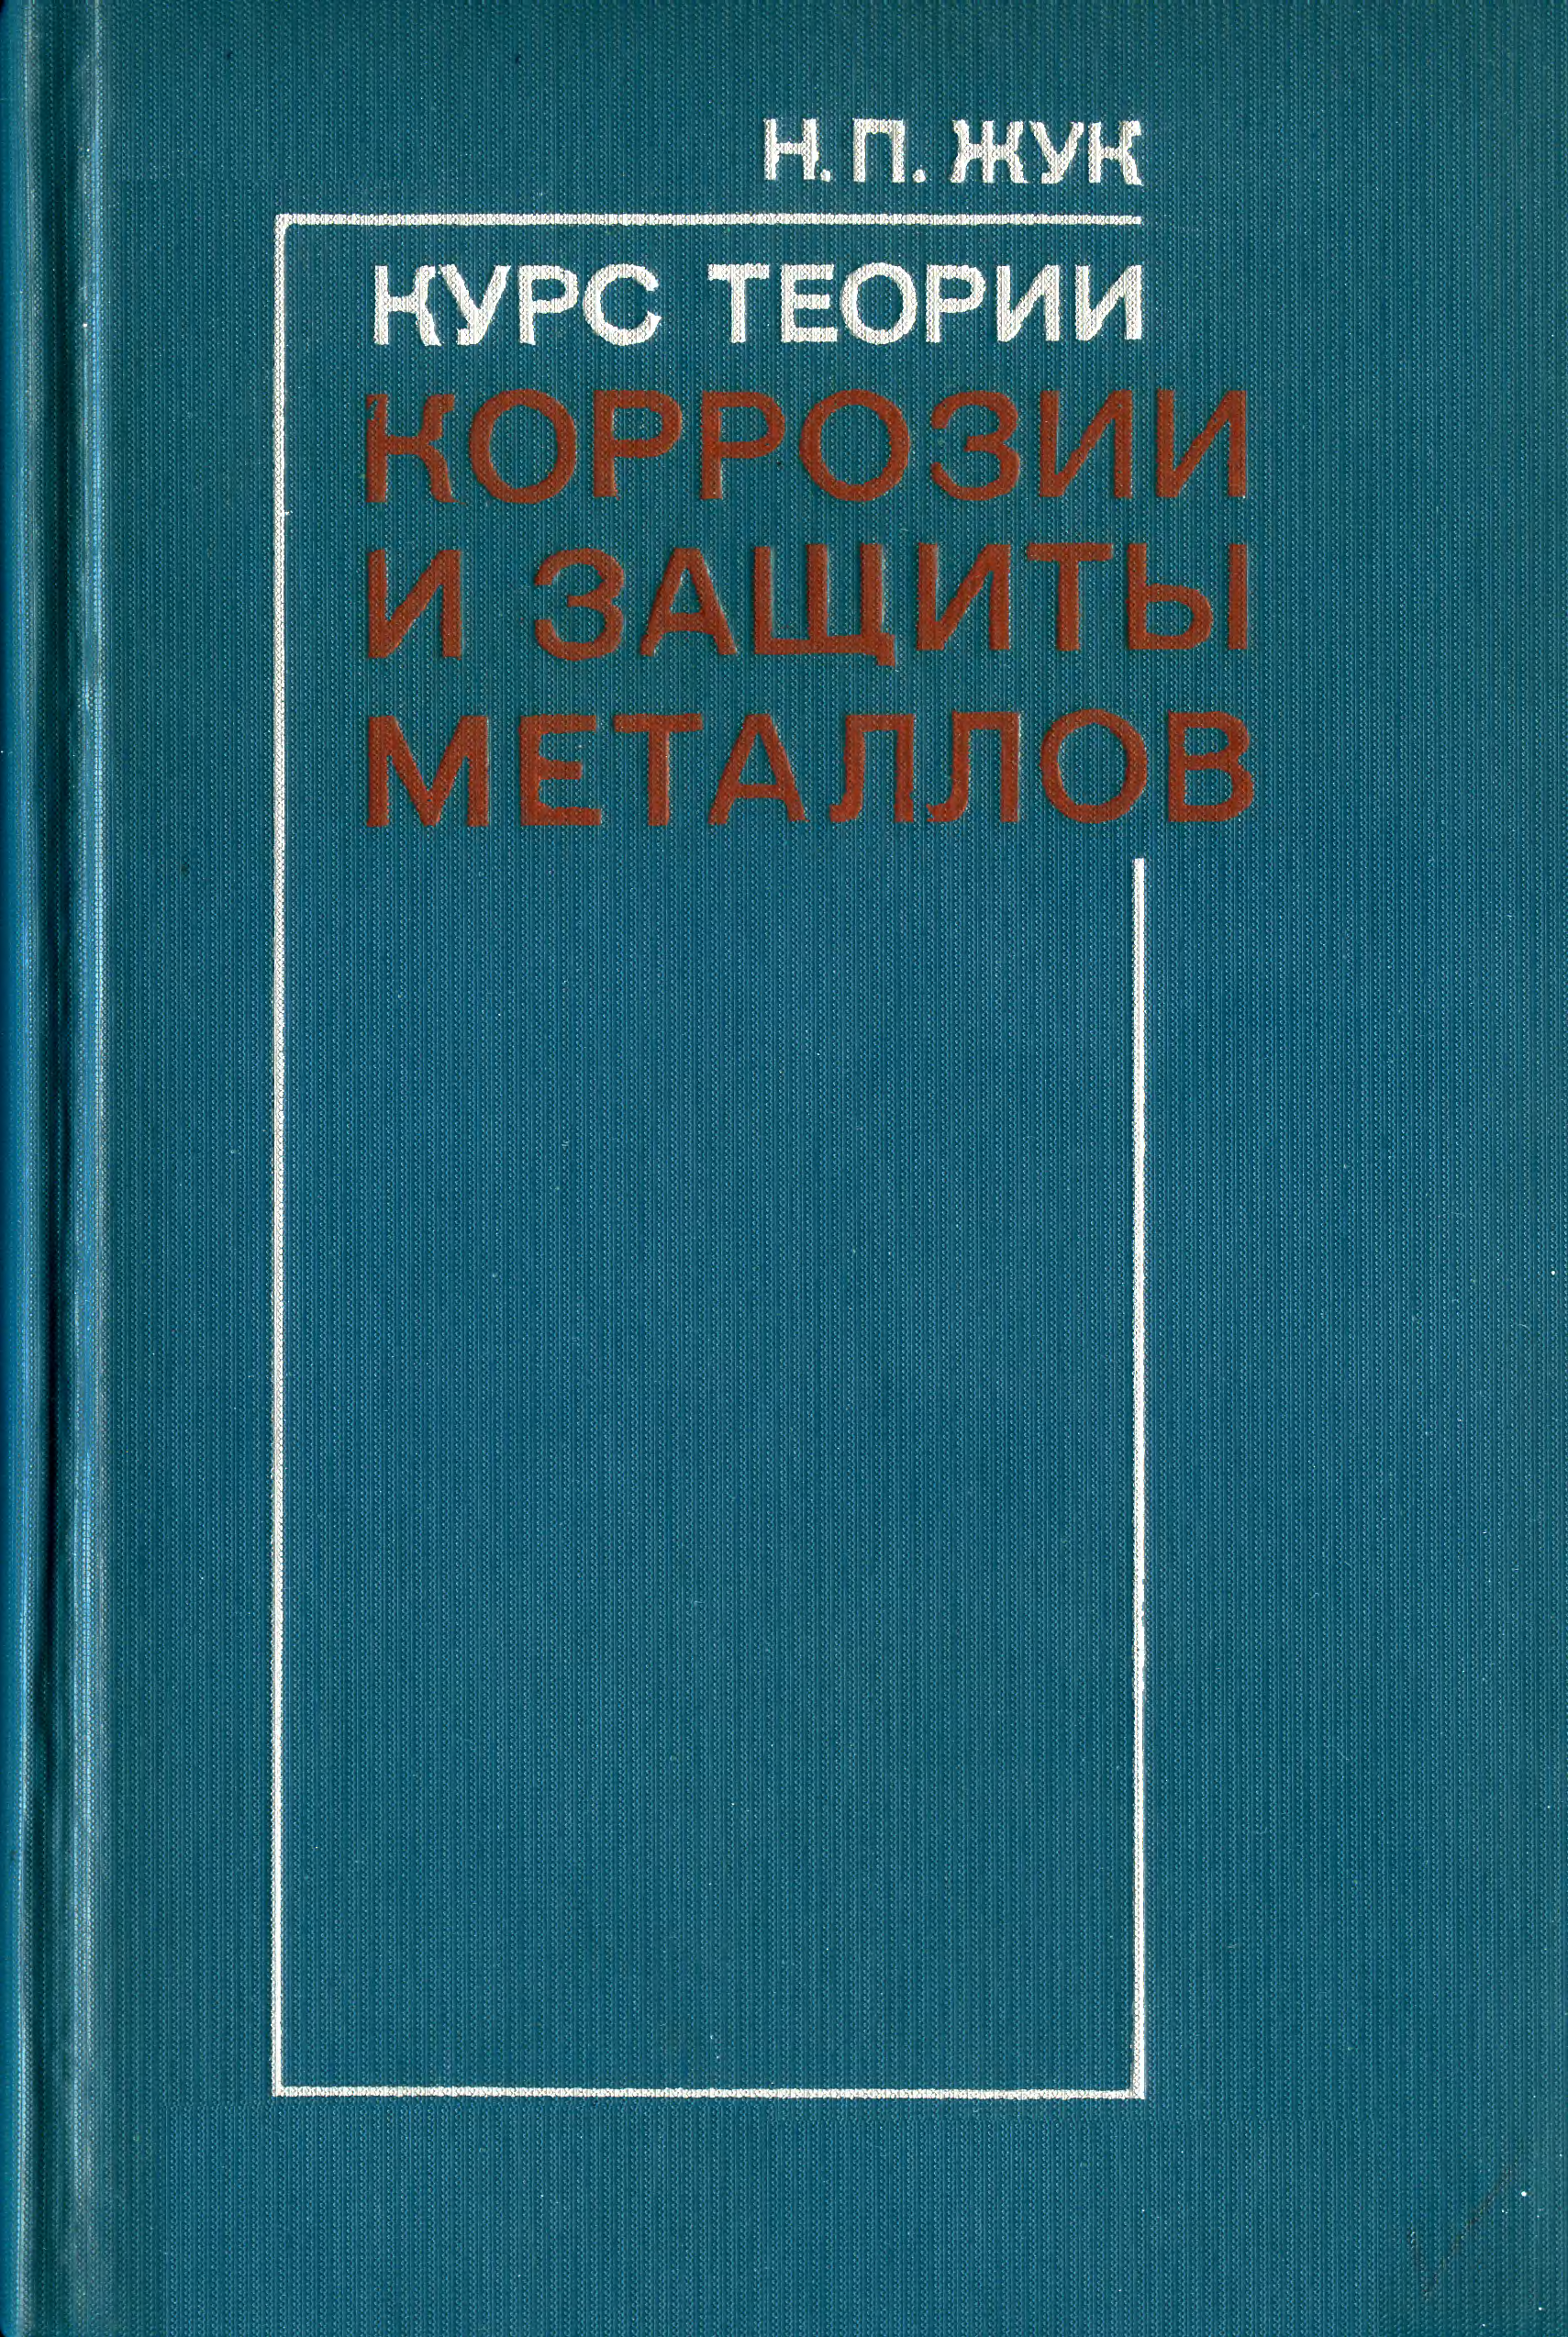 Жук н п. Н. П. жуп курс теории коррозии и защиты металлов. Книги курсы. Металлургия 1976.